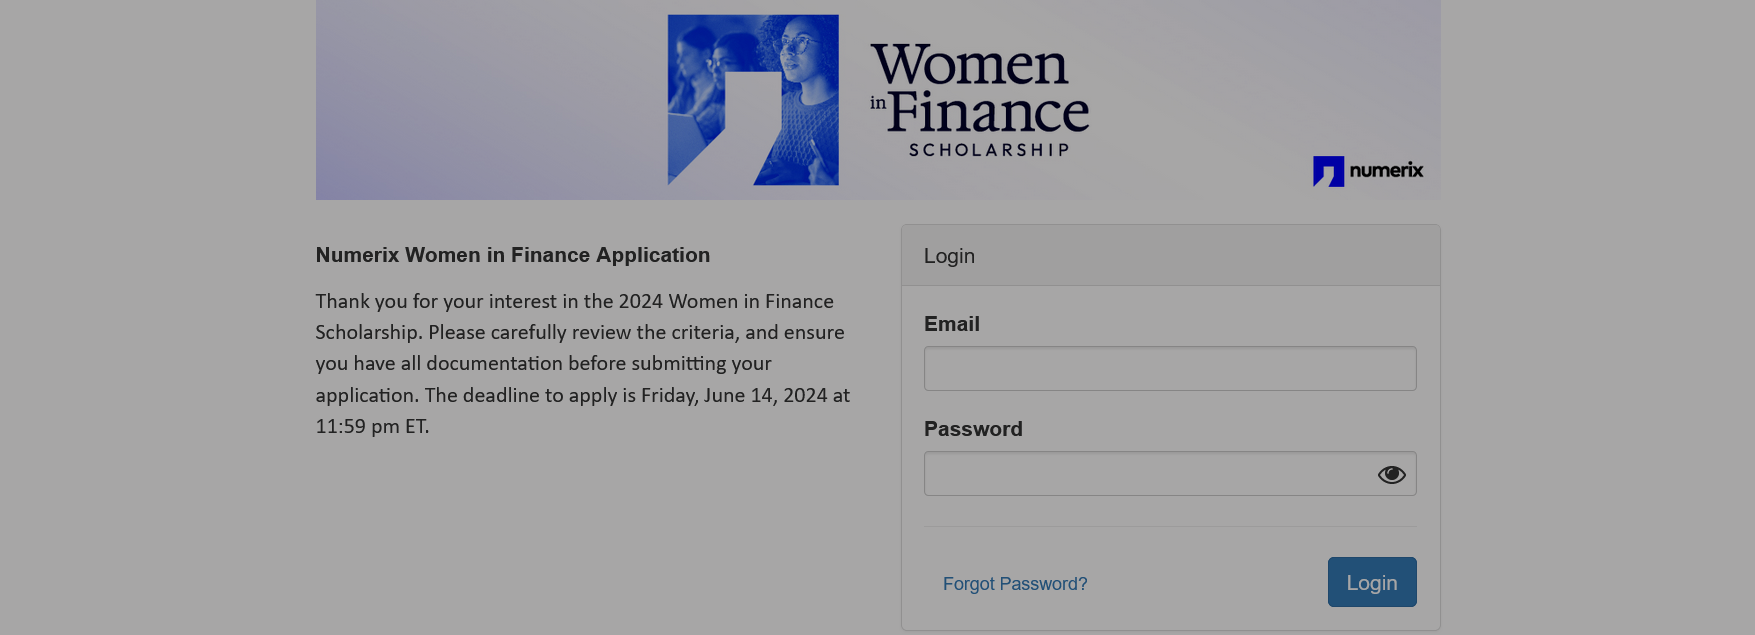 FINCAD 2024 Women in Finance Scholarship for Students Worldwide